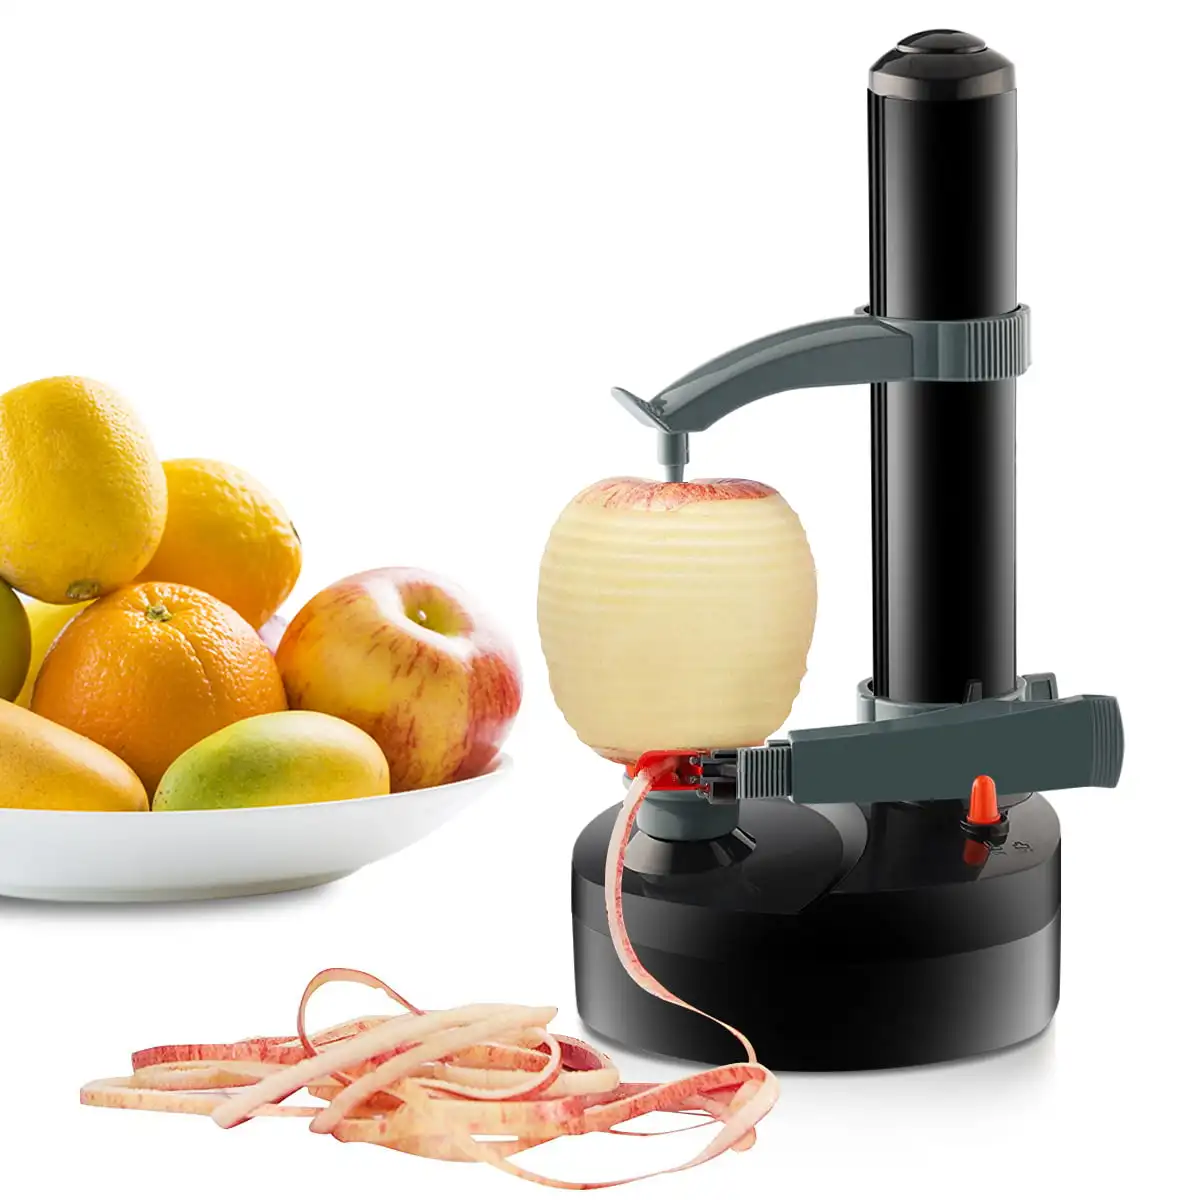 

Автоматическая вращающаяся Овощечистка, многофункциональный прибор для чистки картофеля, фруктов и овощей, из нержавеющей стали, черный